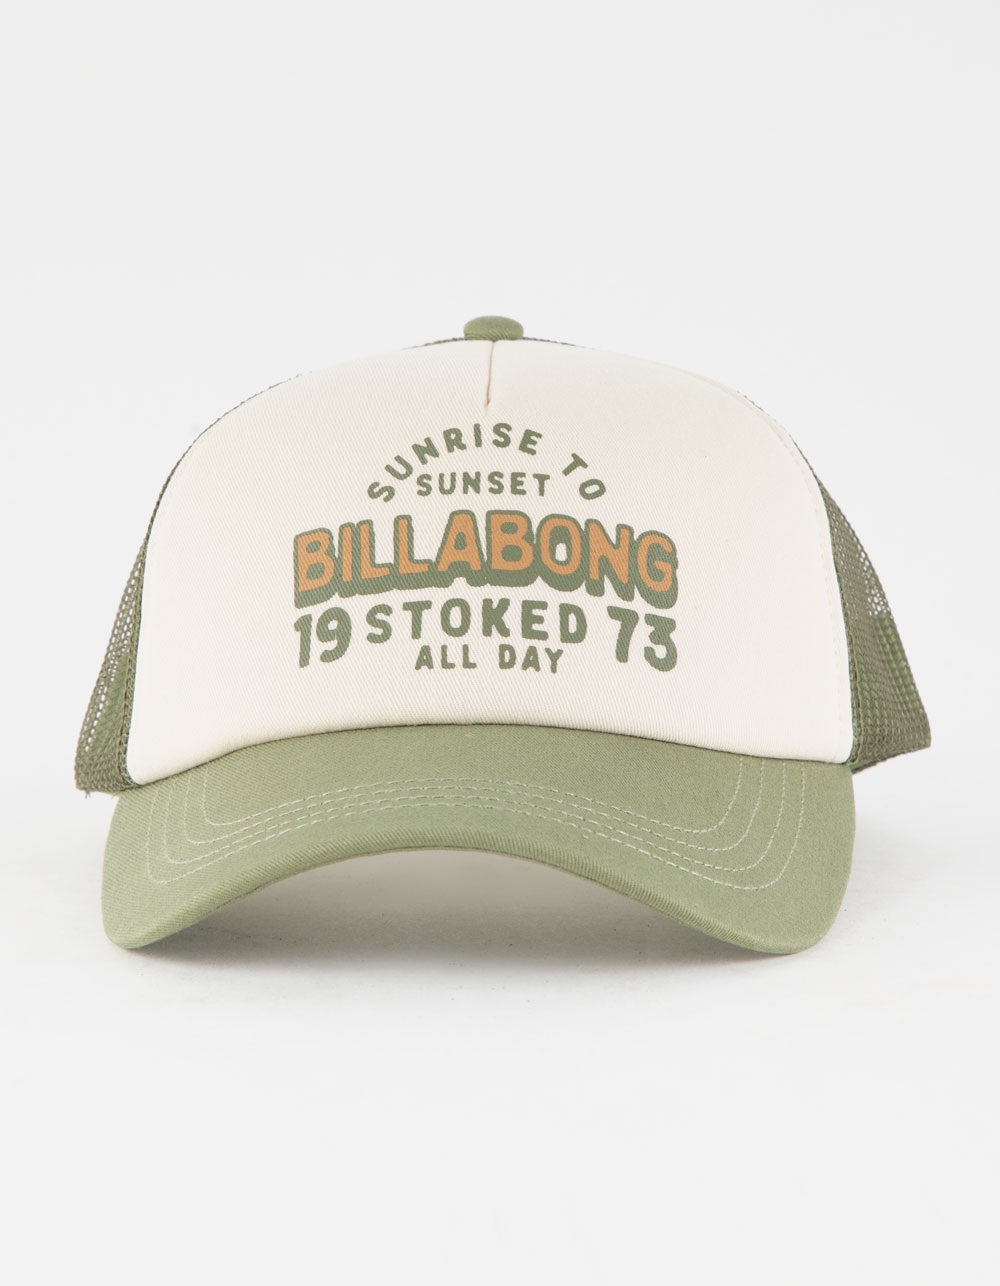 BILLABONG Aloha Forever Womens Trucker Tillys WHITE/OLIVE - Hat 